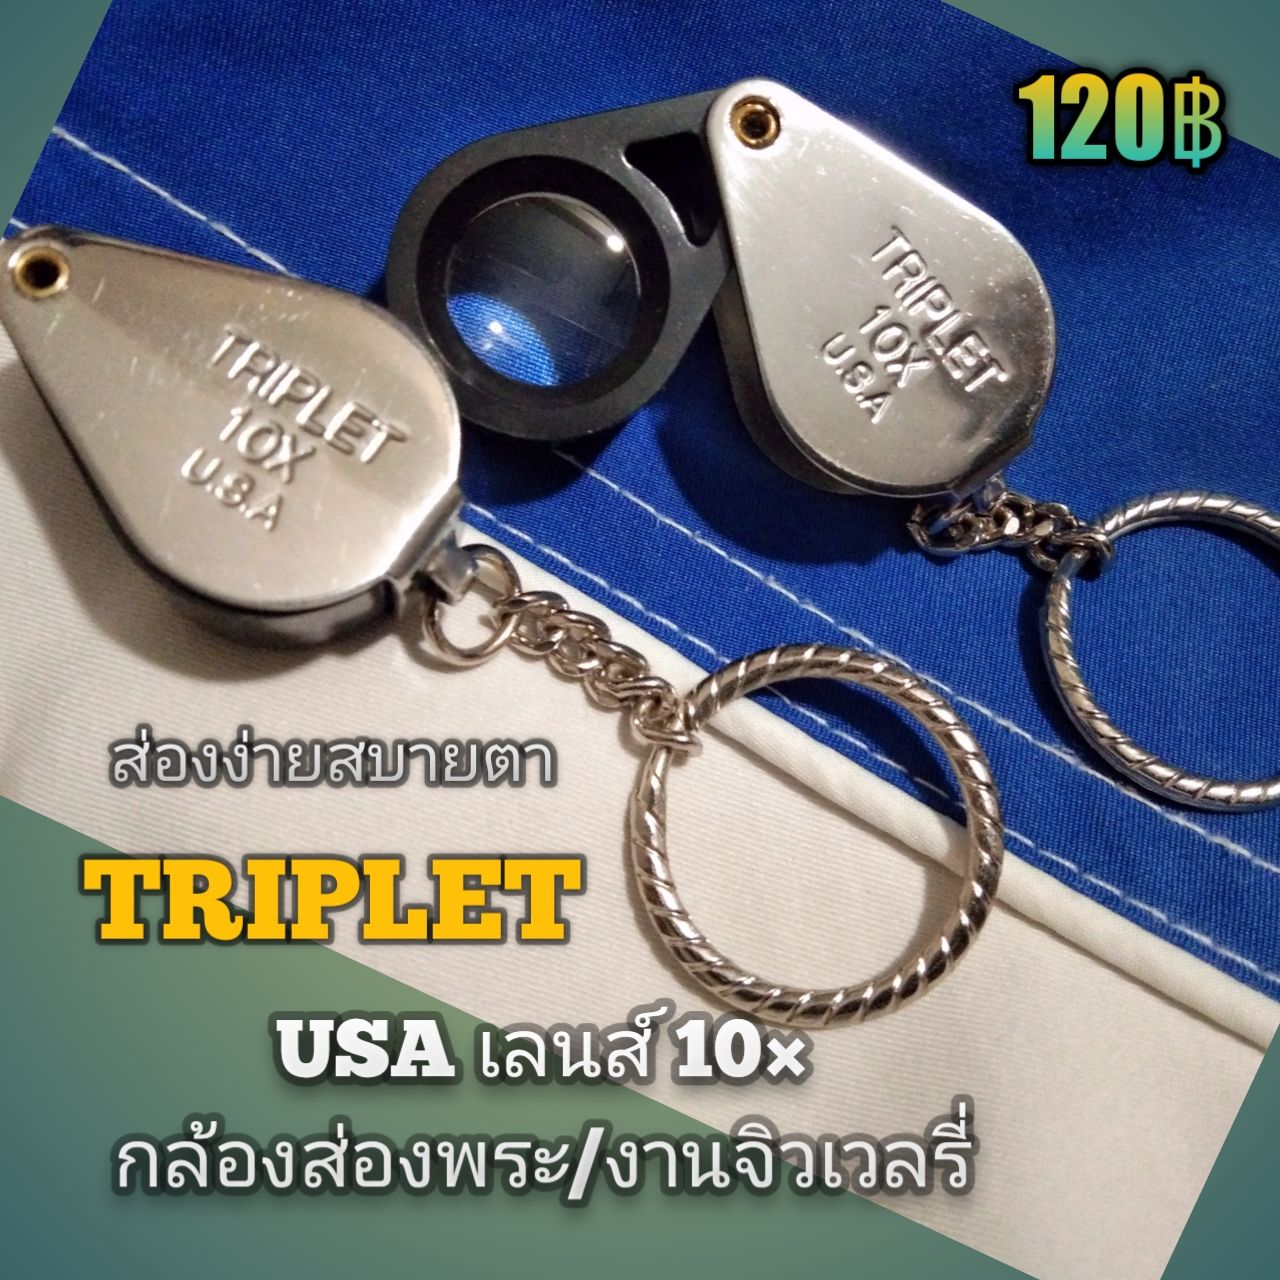 ?ใหม่  TRIPLET  เลนส์ขยาย 10× USA กล้องส่องพระ/งานเพชร พลอย เลนส์ดีส่องง่ายสบายตา ใช้ทนใช้ดี